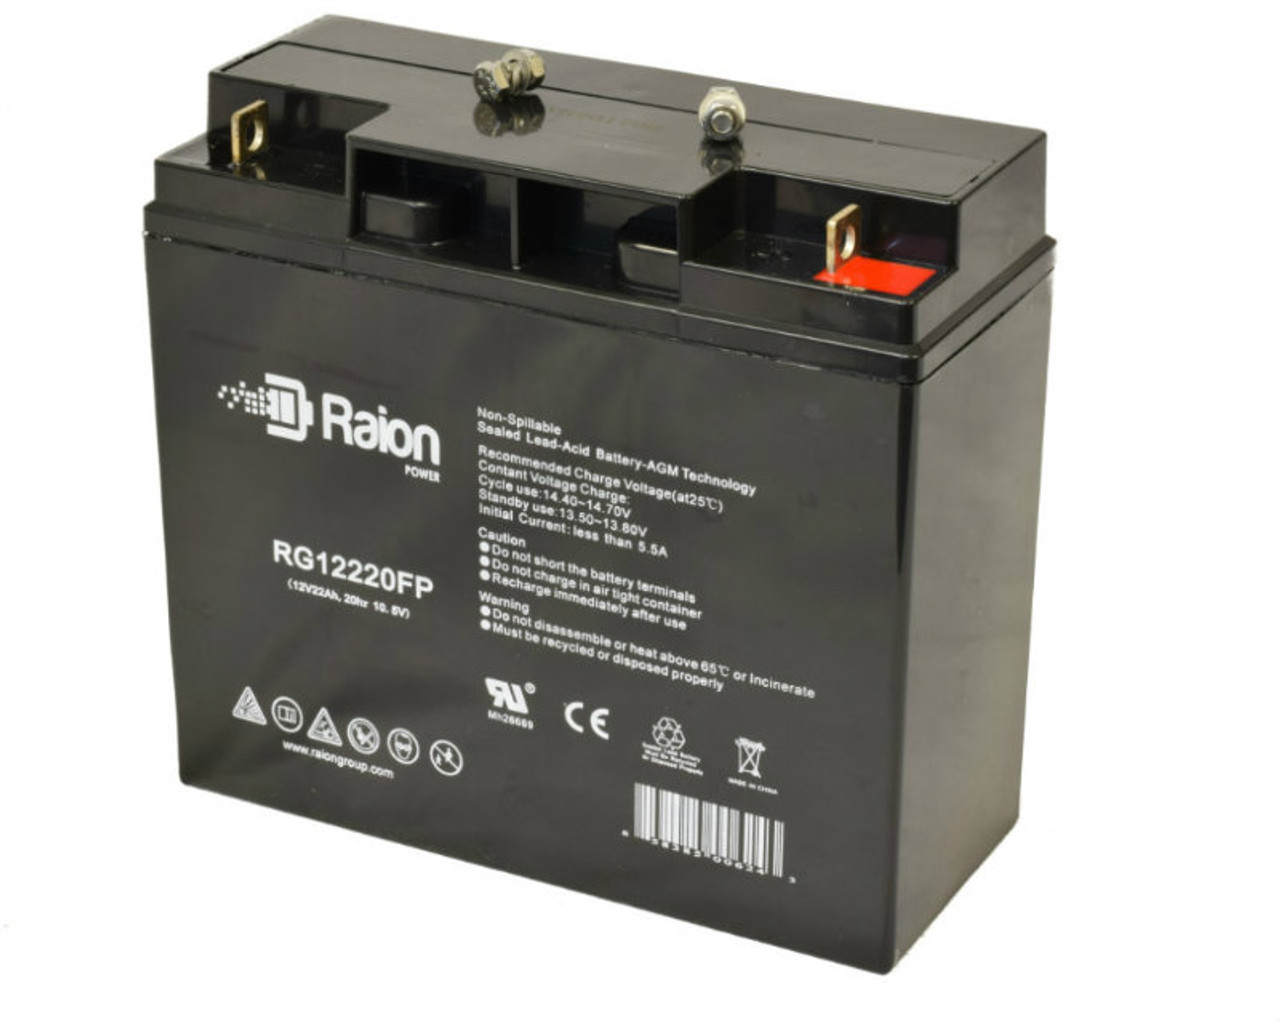 Raion Power RG12220FP 12V 22Ah Lead Acid Battery for NPP Power NP12-22Ah